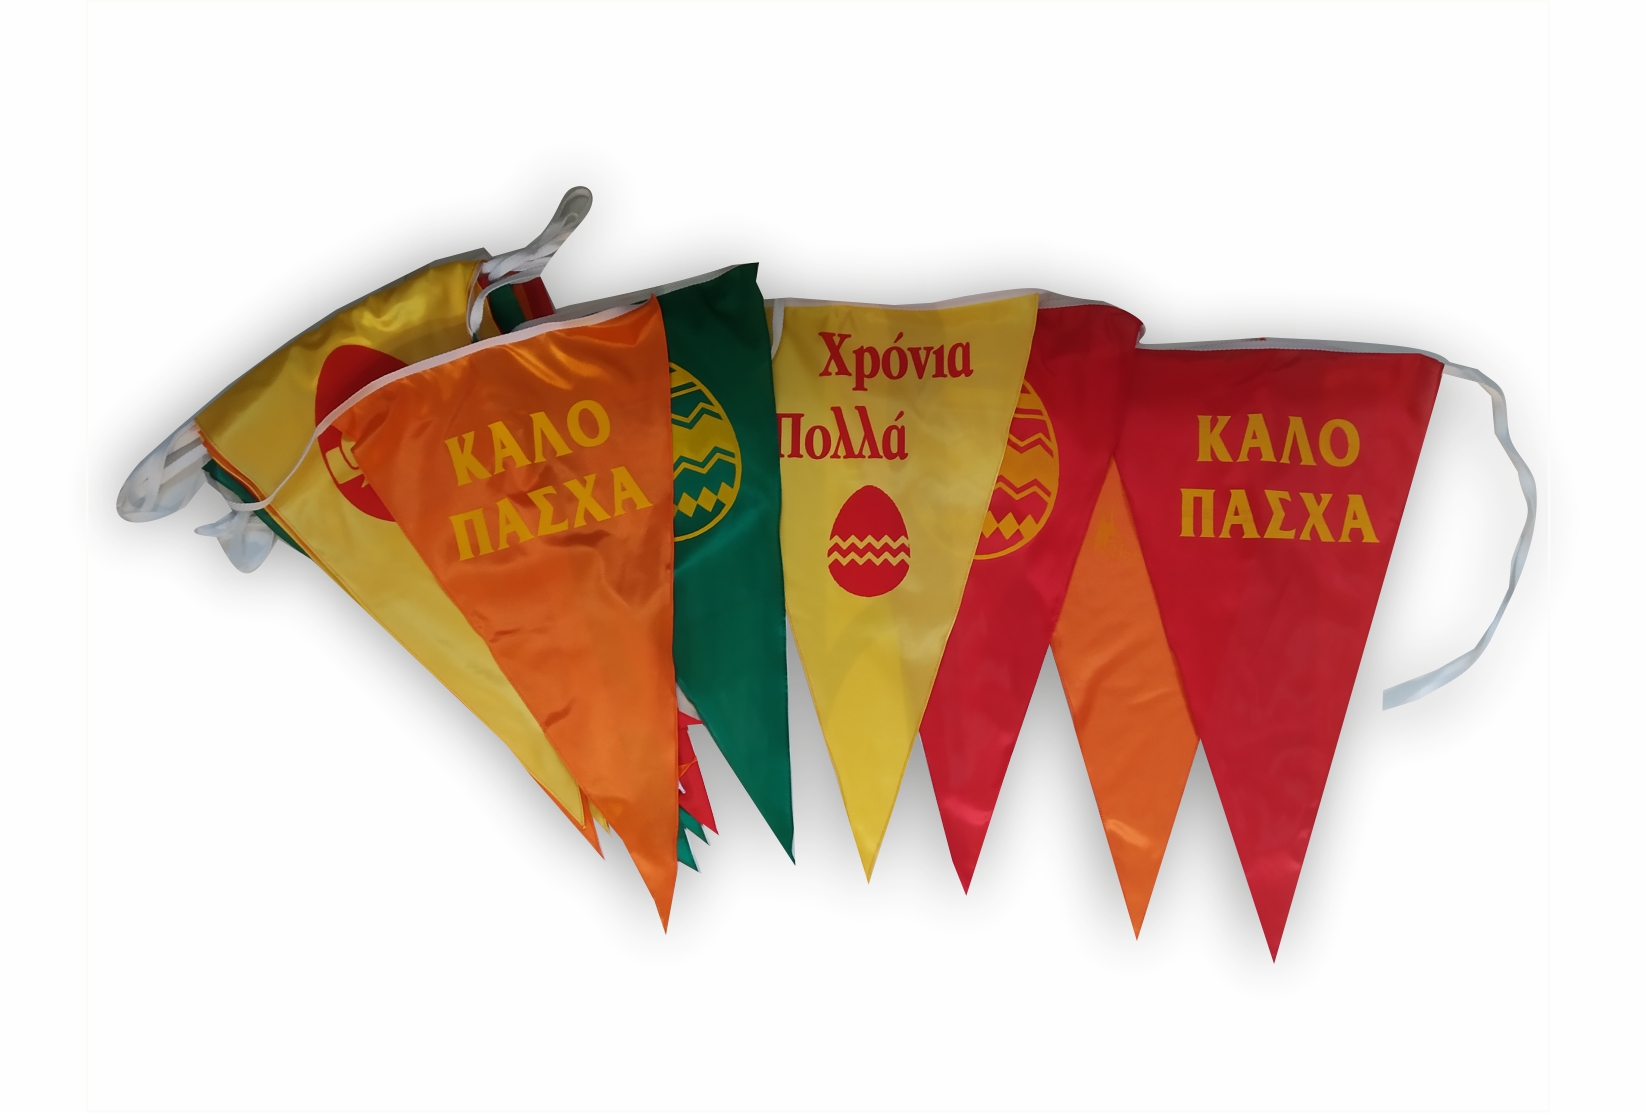 ΚΑΛΟ ΠΑΣΧΑ ΣΗΜΑΙΑΚΙΑ ΚΟΚΚΩΝΗΣ ΣΗΜΑΙΕΣ KOKKONIS FLAGS